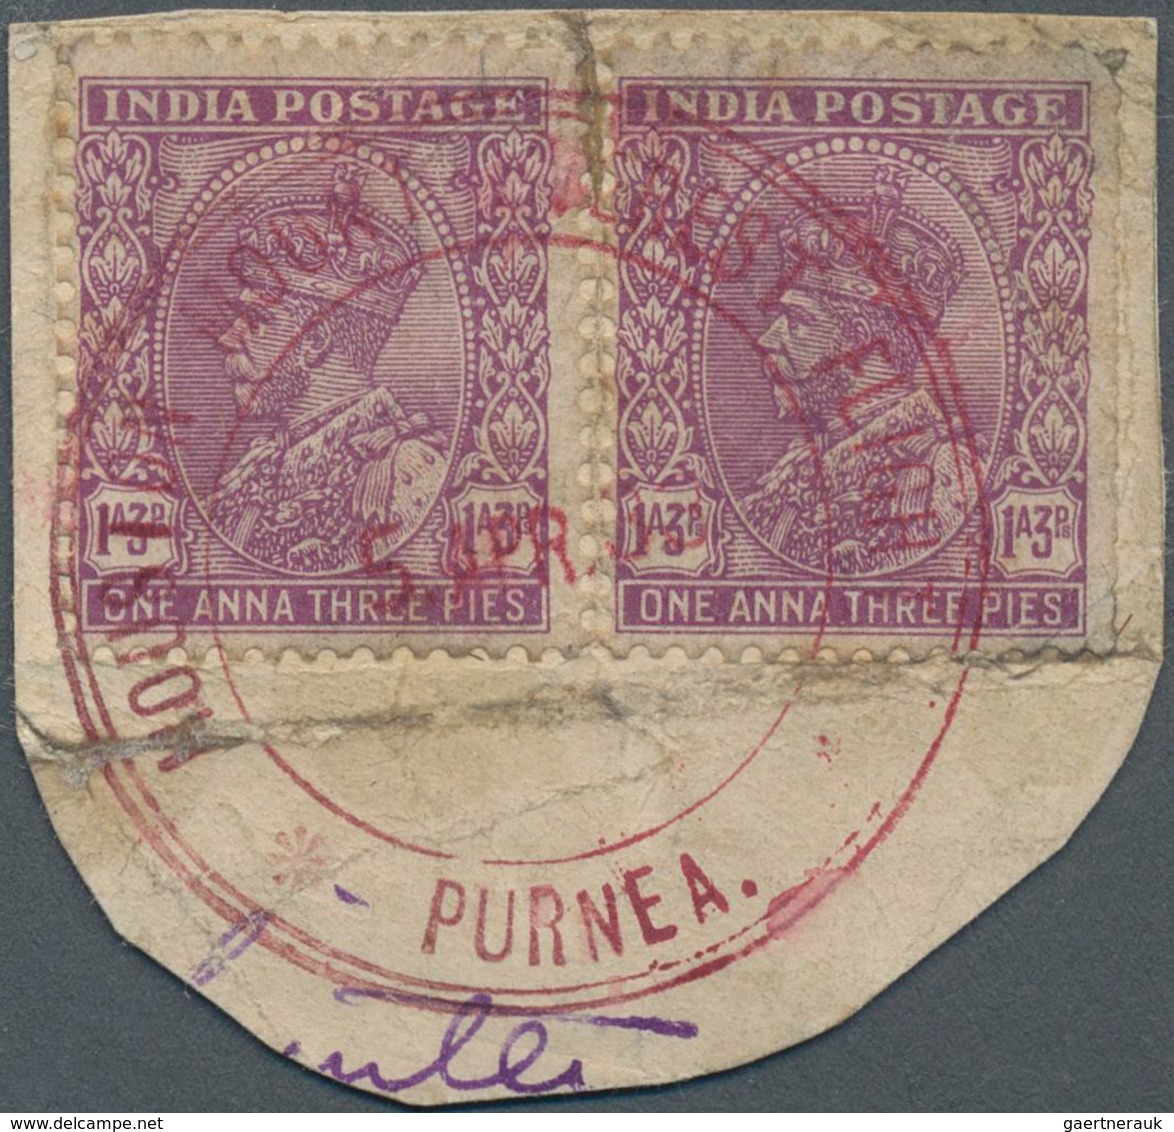 Indien - Flugpost: 1933 "HOUSTON MT. EVEREST FLIGHT-PURNEA/5 APR 33" Special Datestamp Tying Two Sin - Luftpost